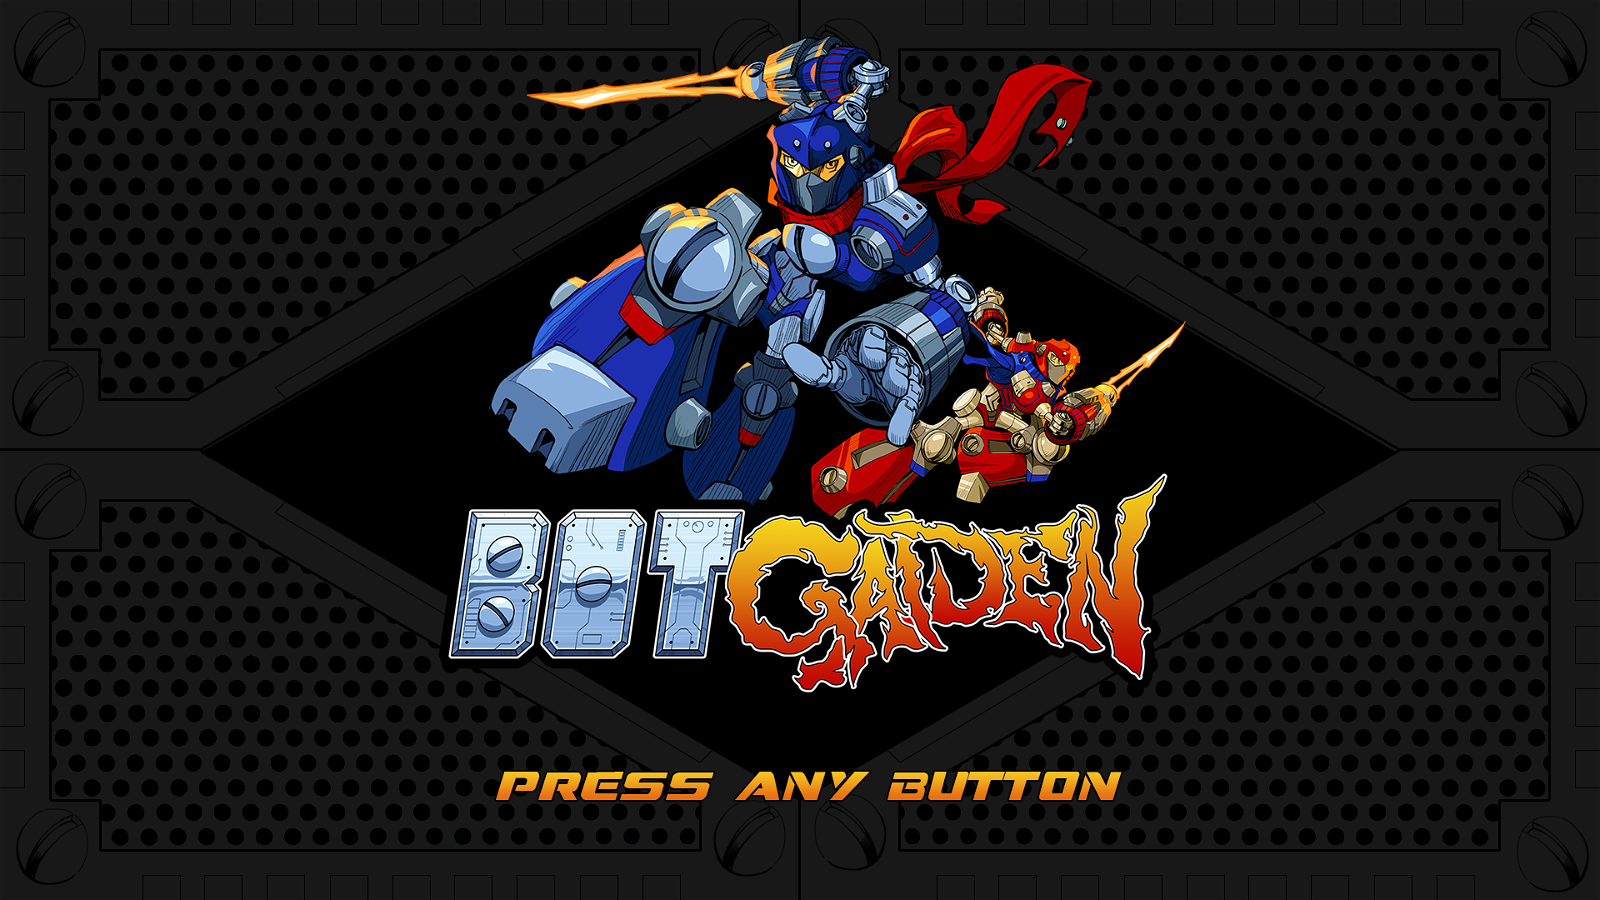 Image of Bot Gaiden